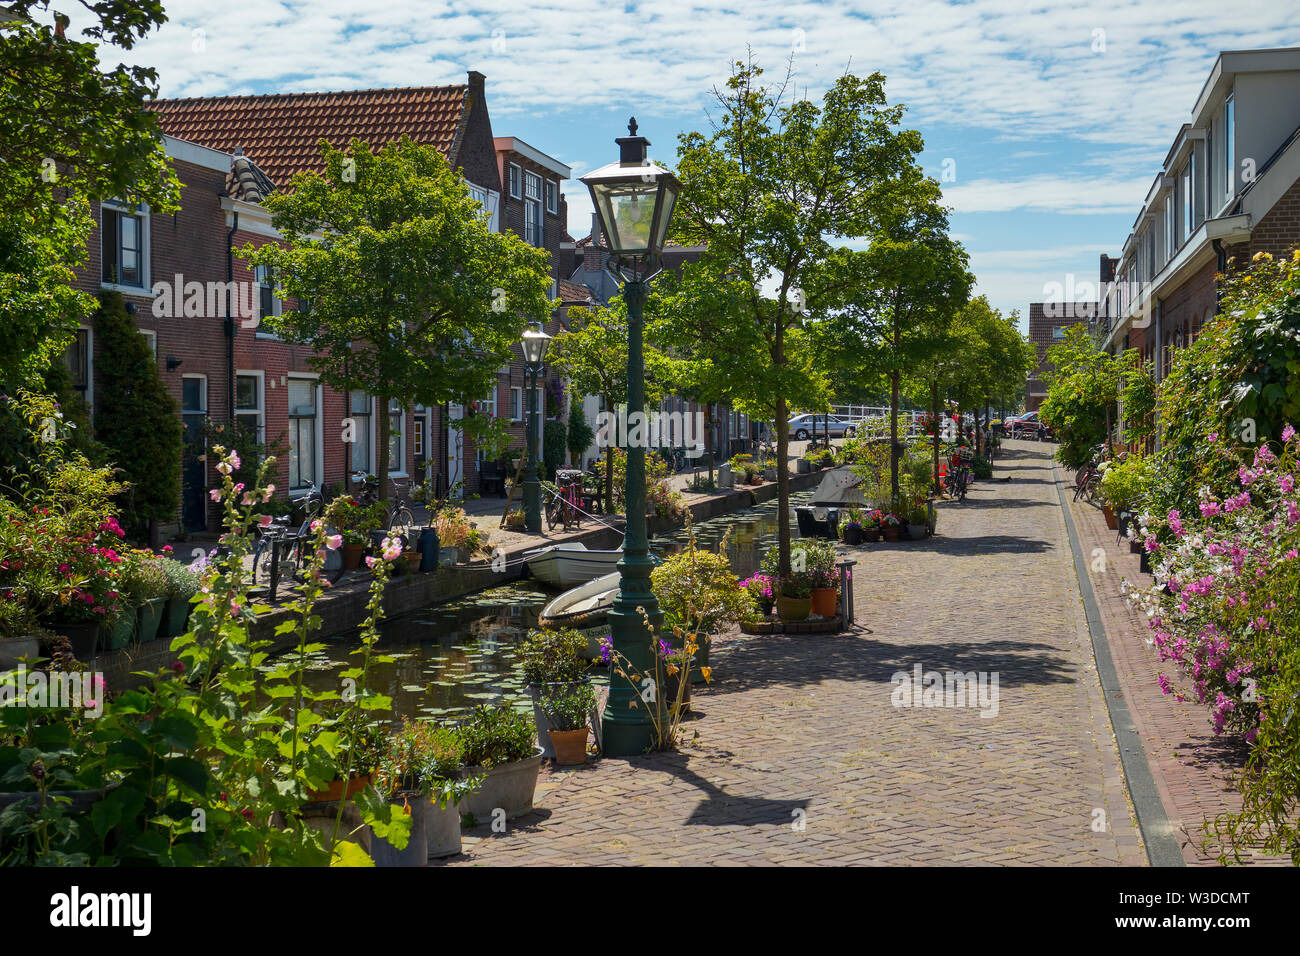 Leiden, Holland - Juli 05, 2019: Kijfgracht, kleinen Kanal im historischen panoramaeinstellungen von Leiden Stadt geschmückt mit Blumen und Pflanzen Stockfoto